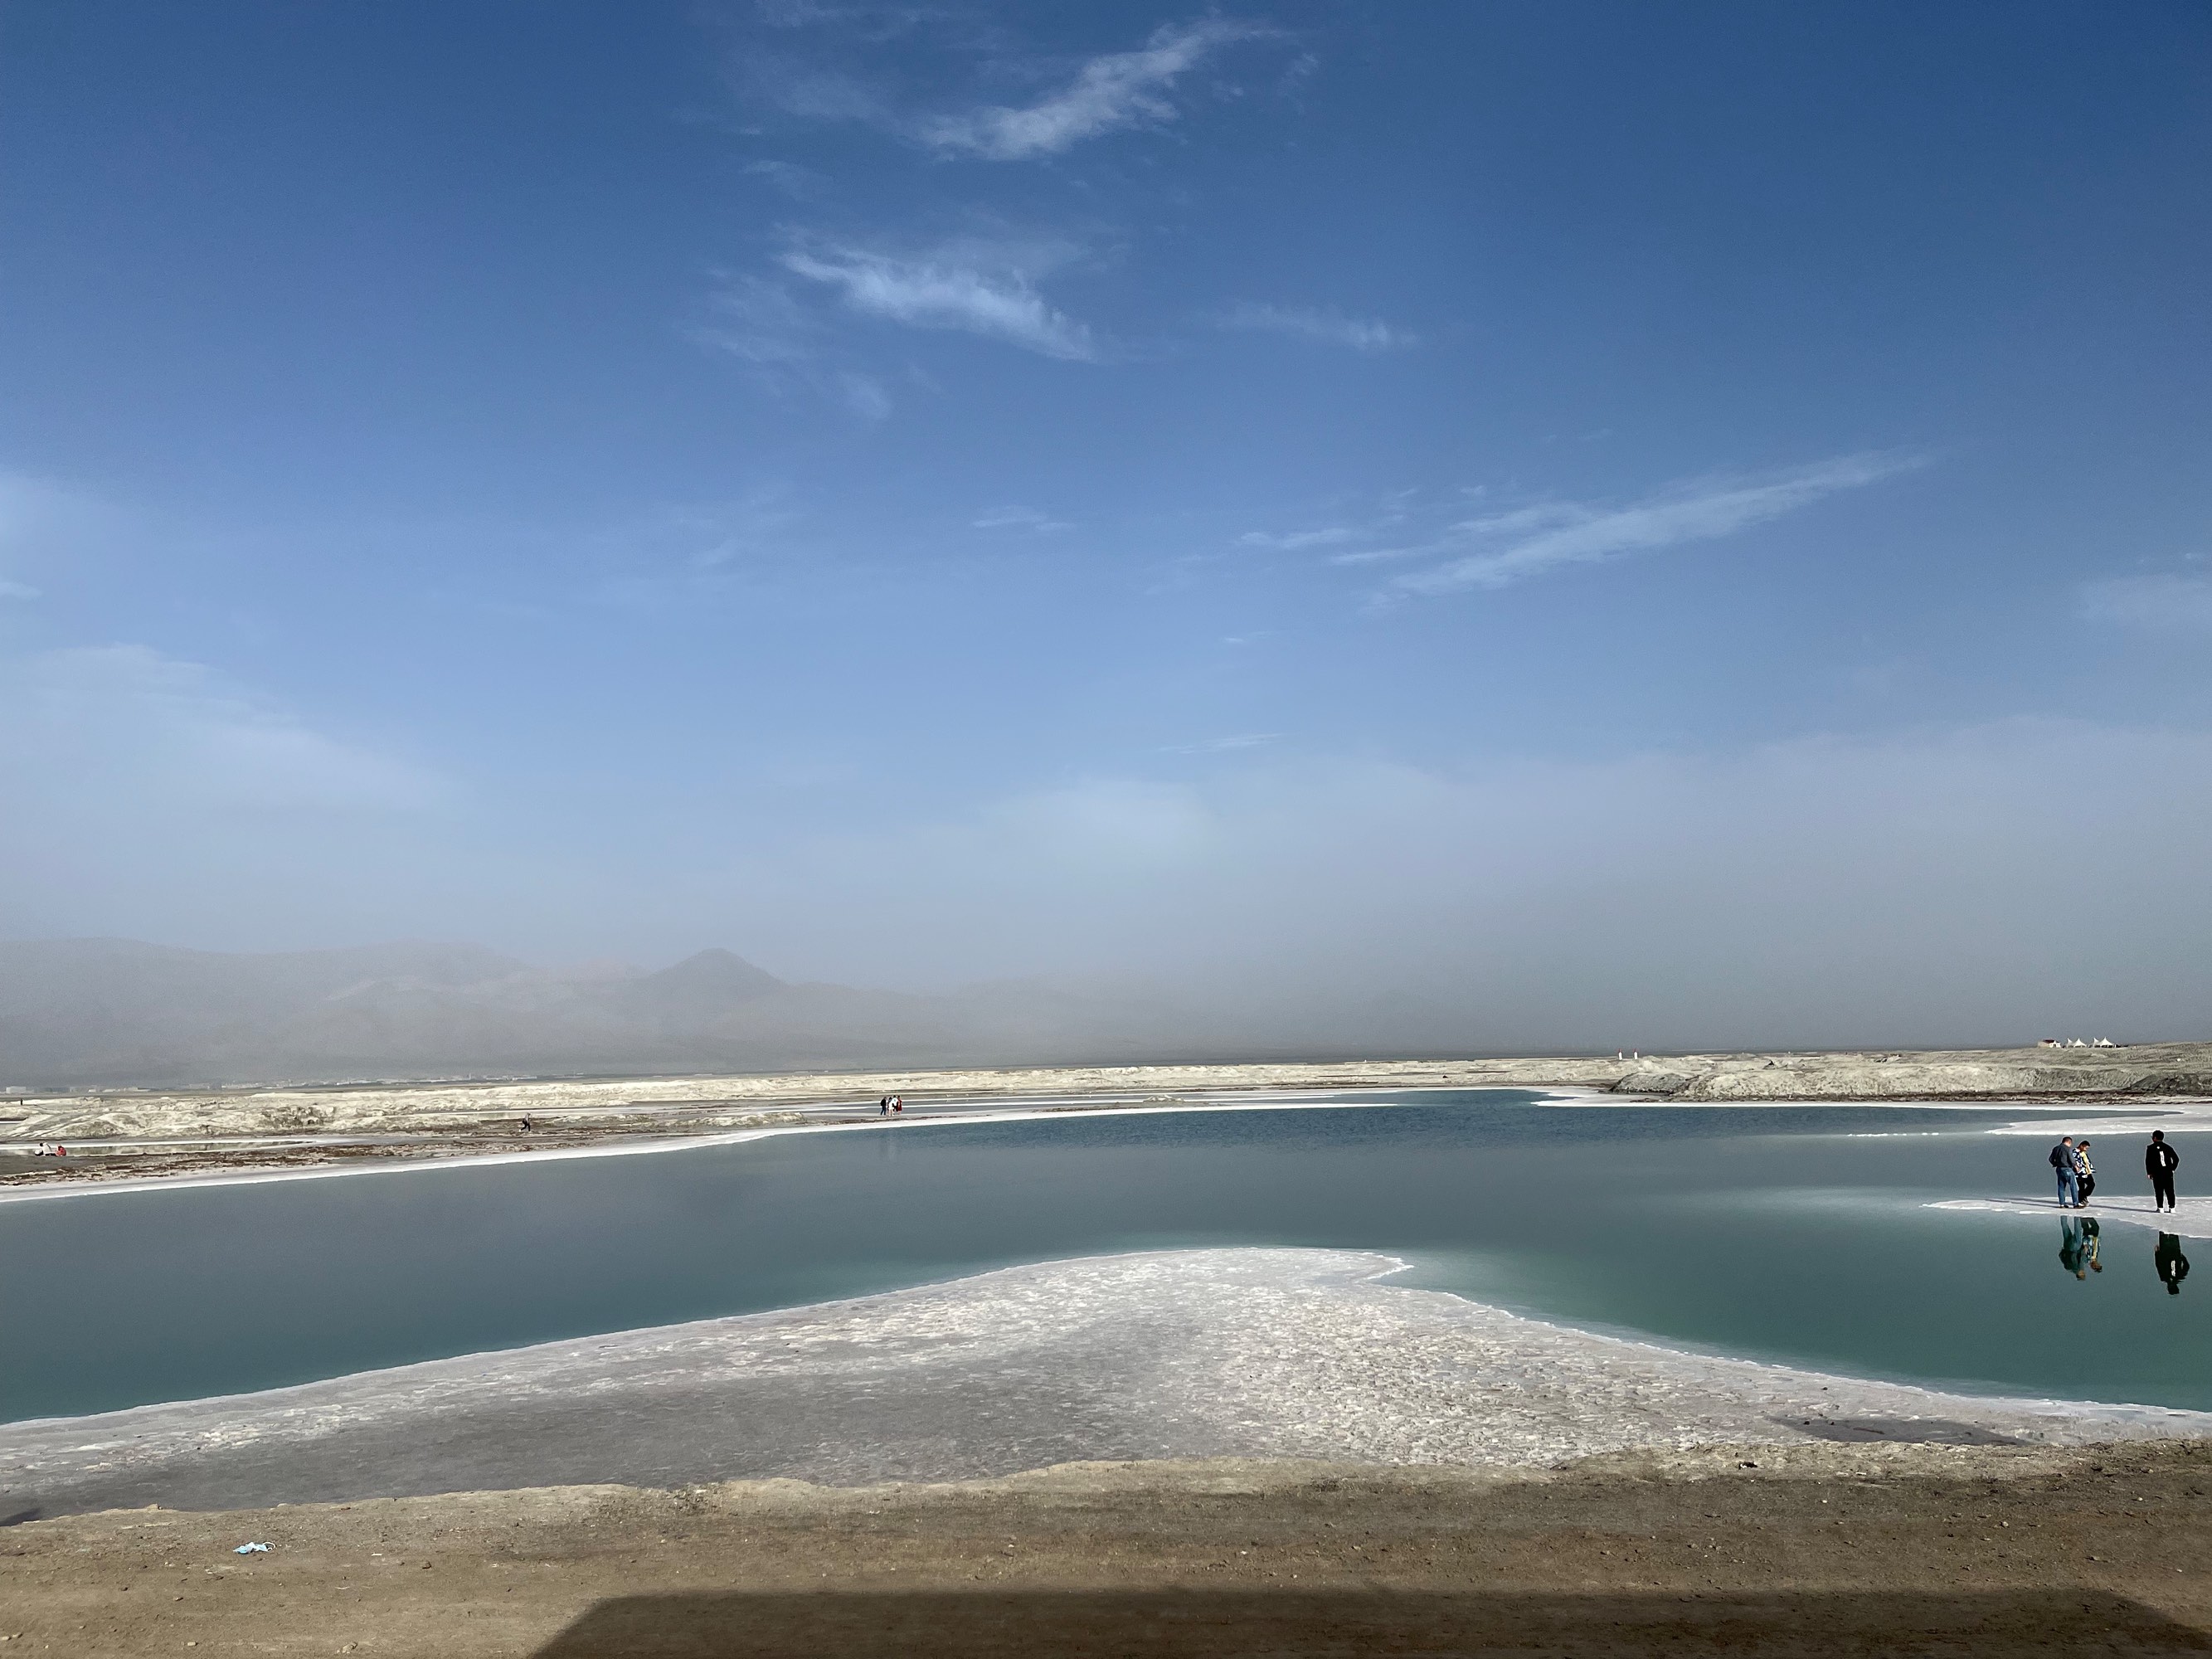 翡翠湖，这边的湖水较深，盐相比茶卡的较少一些，旁边的路基还是以土质为主